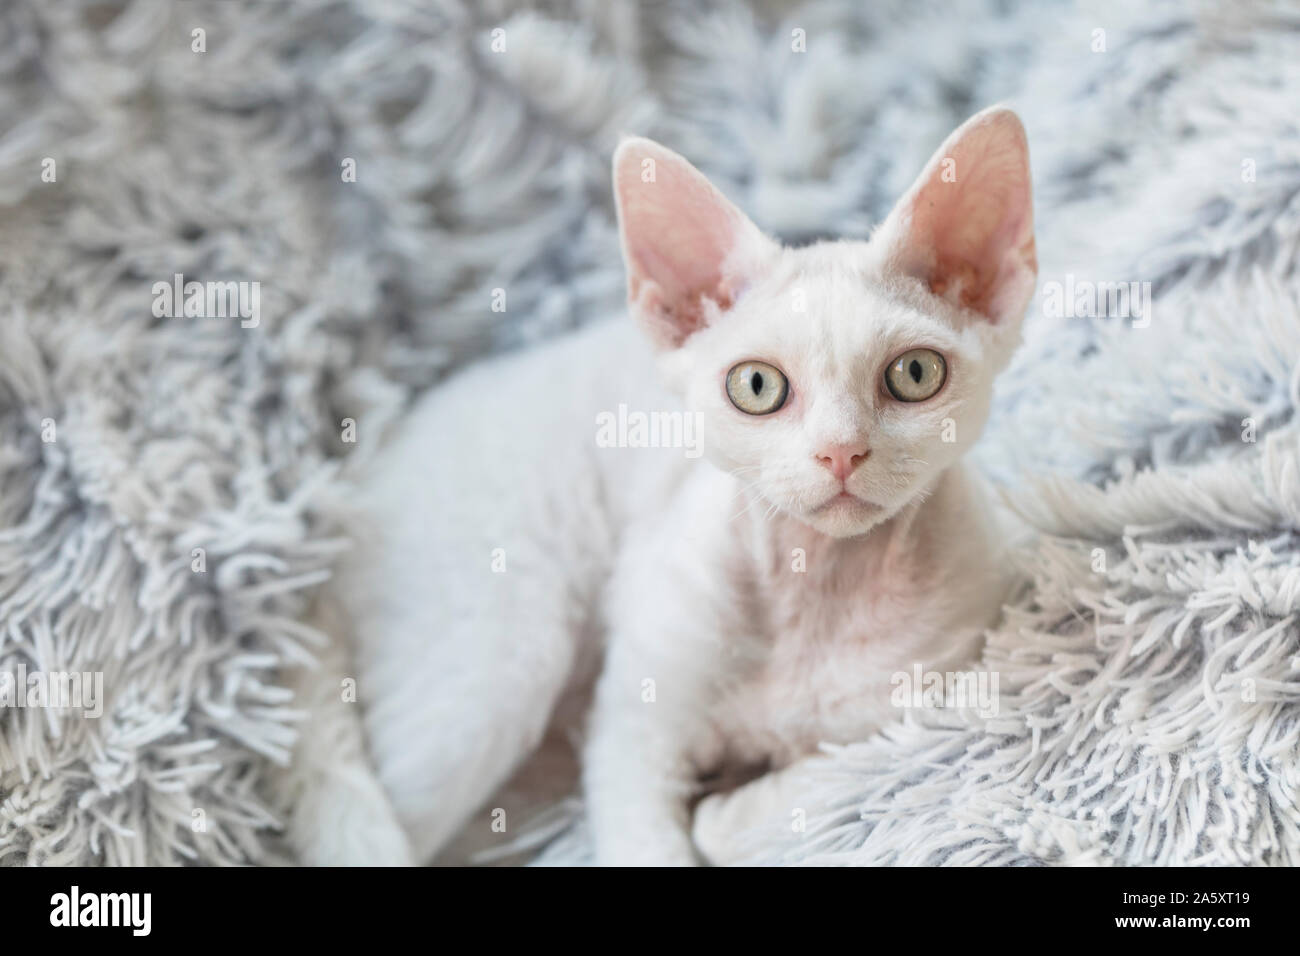 Eine niedliche kleine weiße Katze mit großen Ohren, liegend auf einem grauen flauschige Decke. Die Katze ist eine reinrassige Devon Rex. Stockfoto